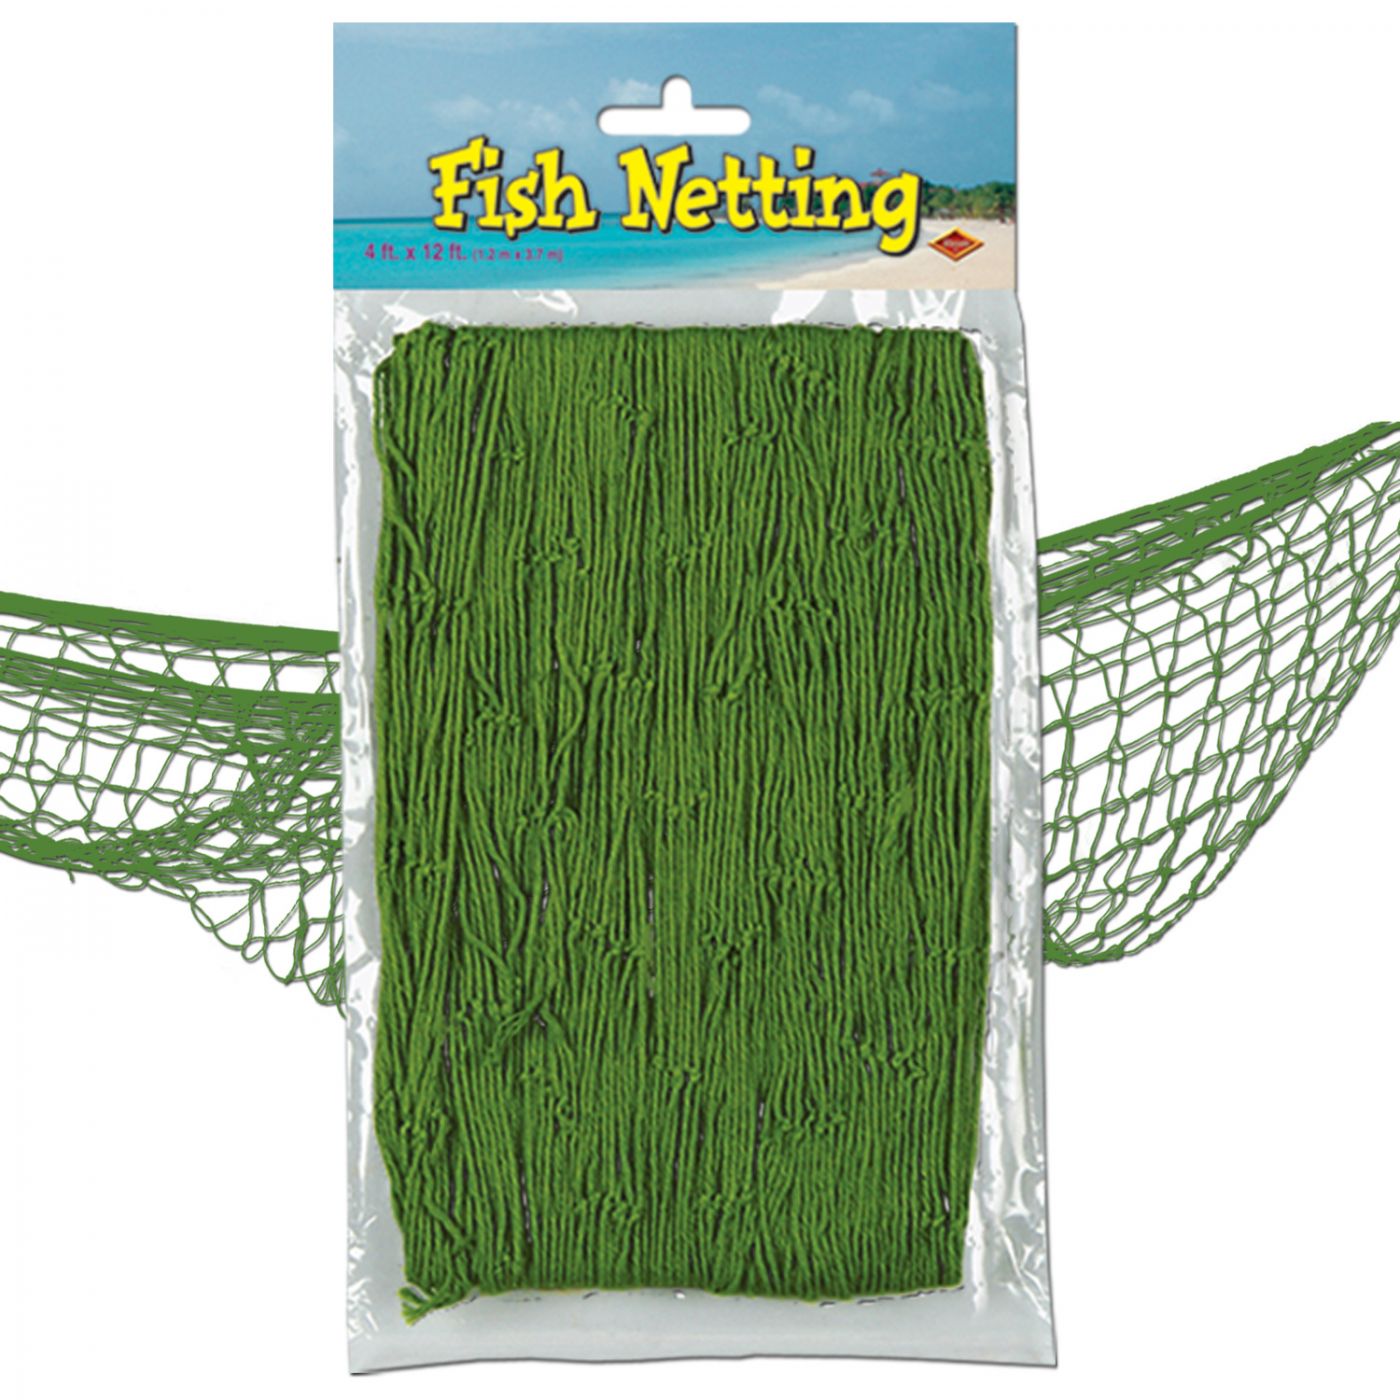 Fish Netting (12) image